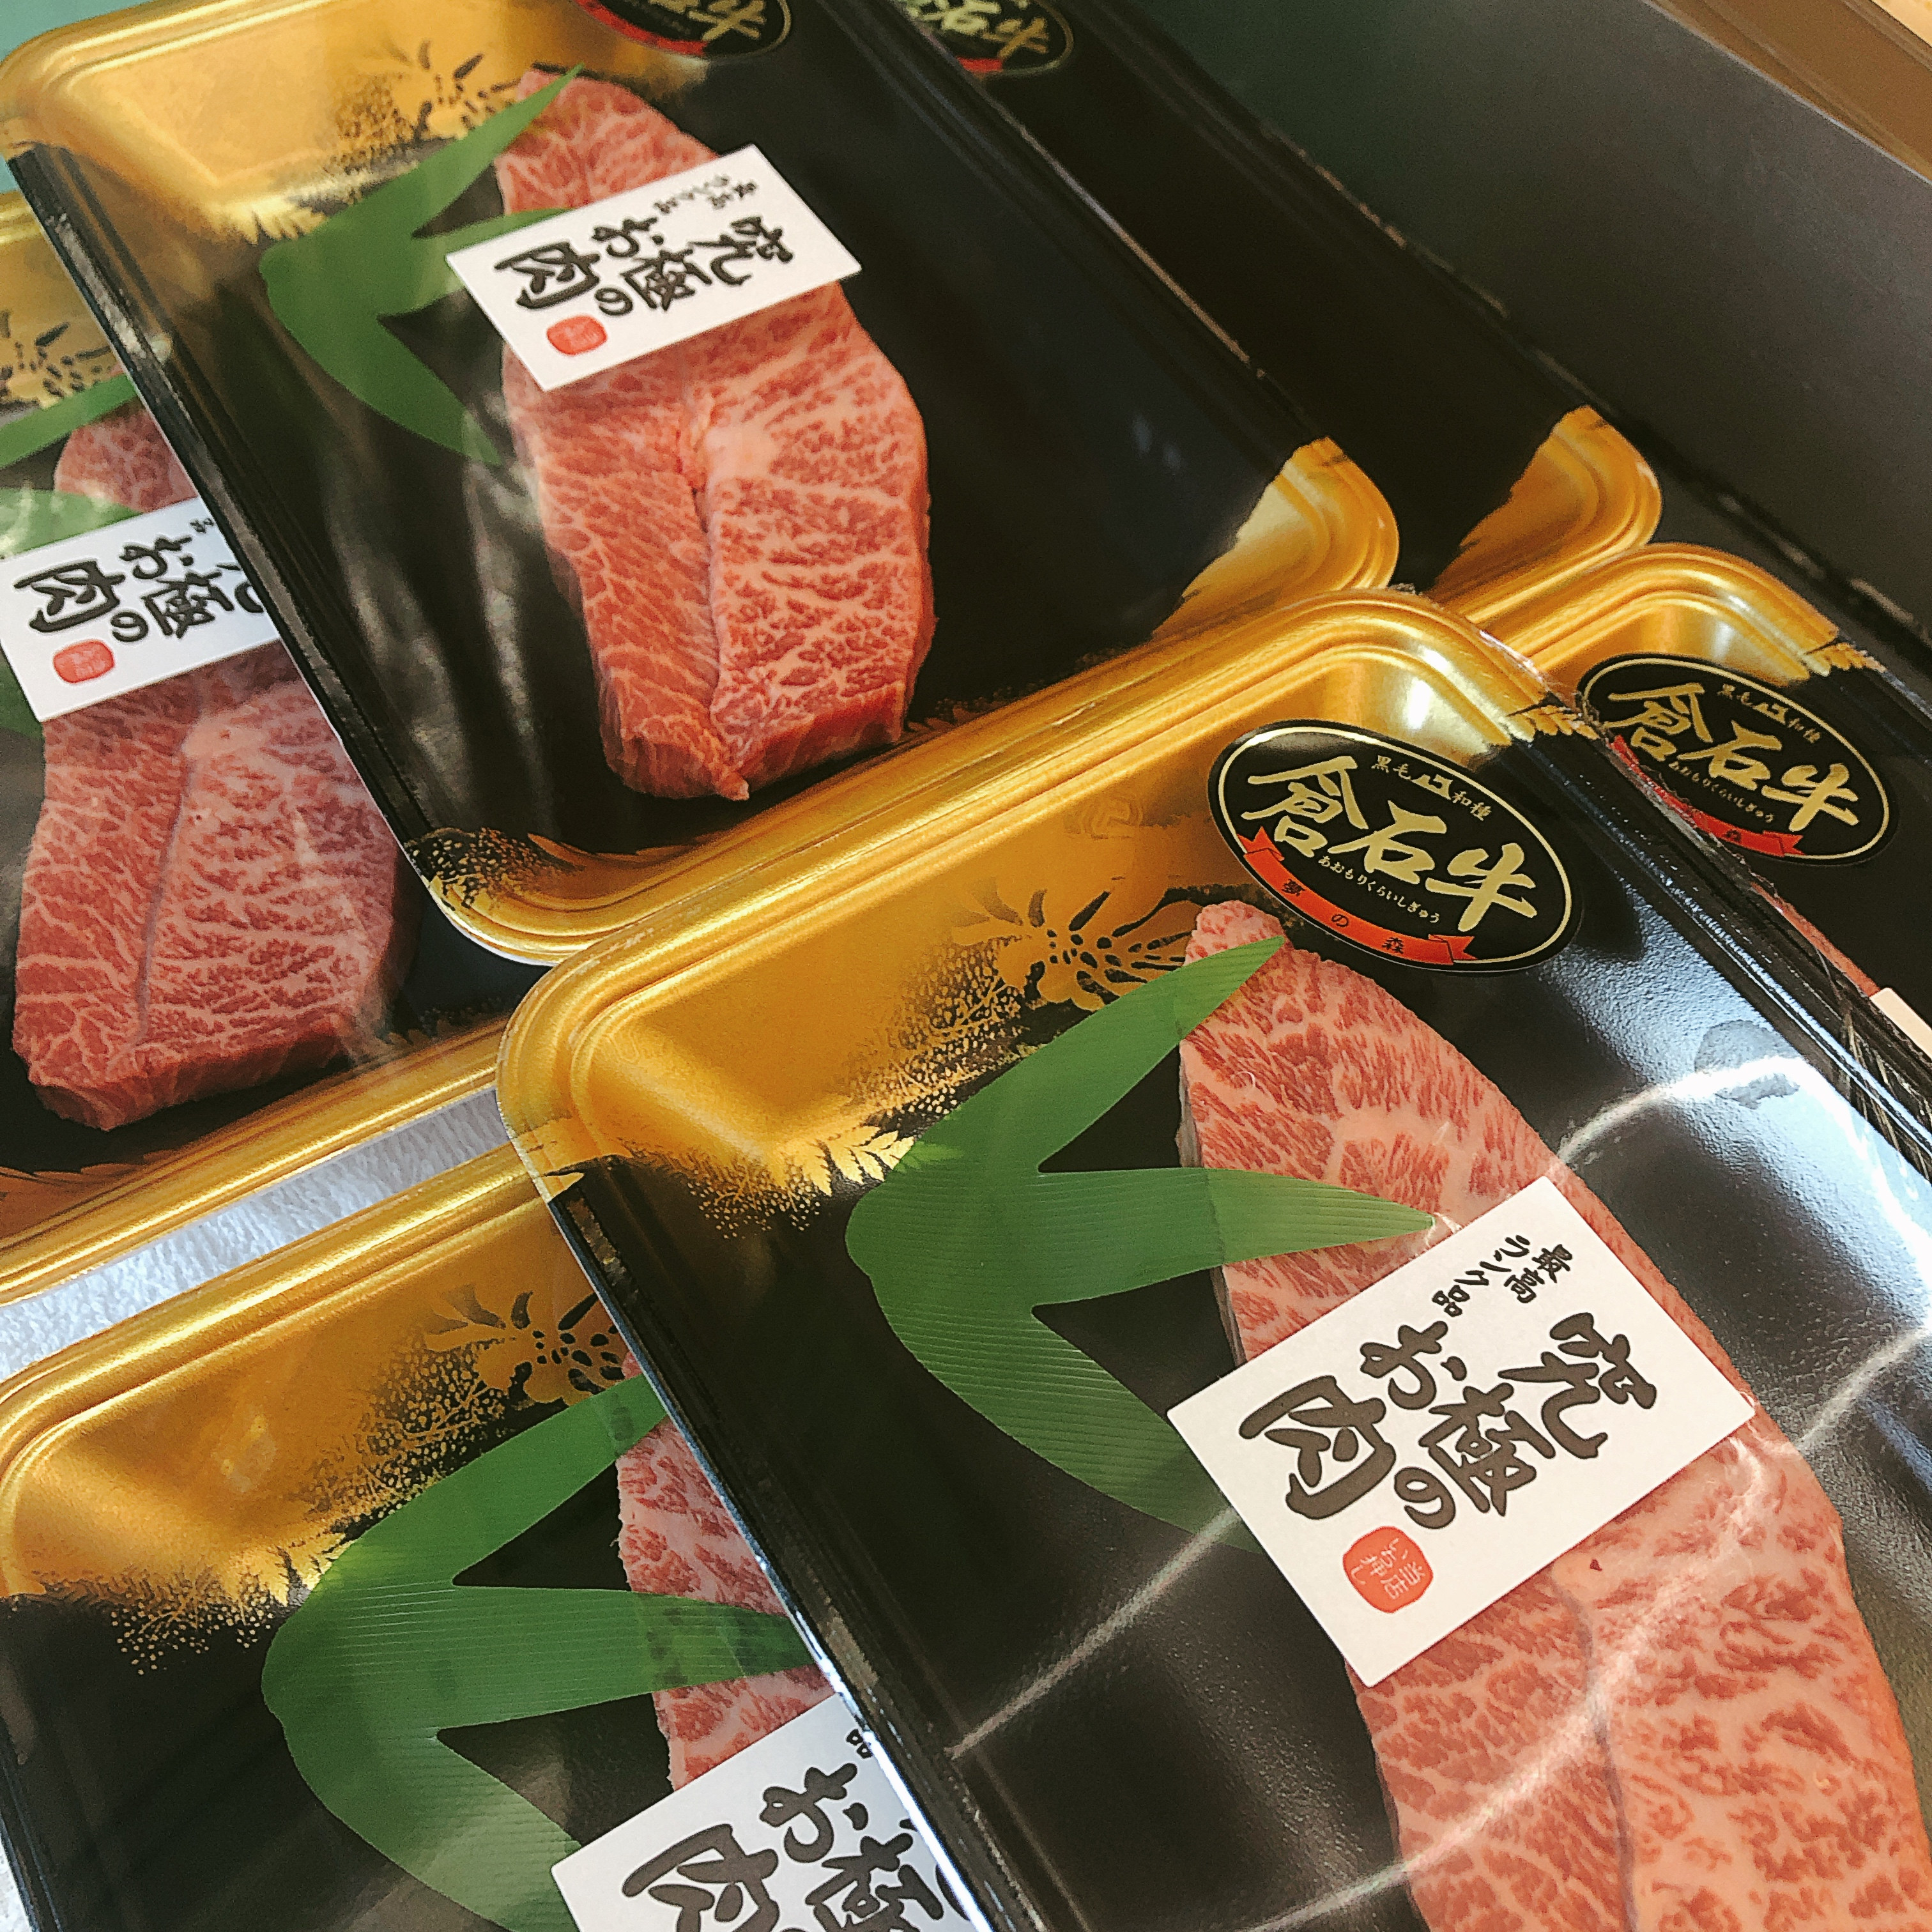 本日は青森県産倉石牛ミスジステーキがお買得です。